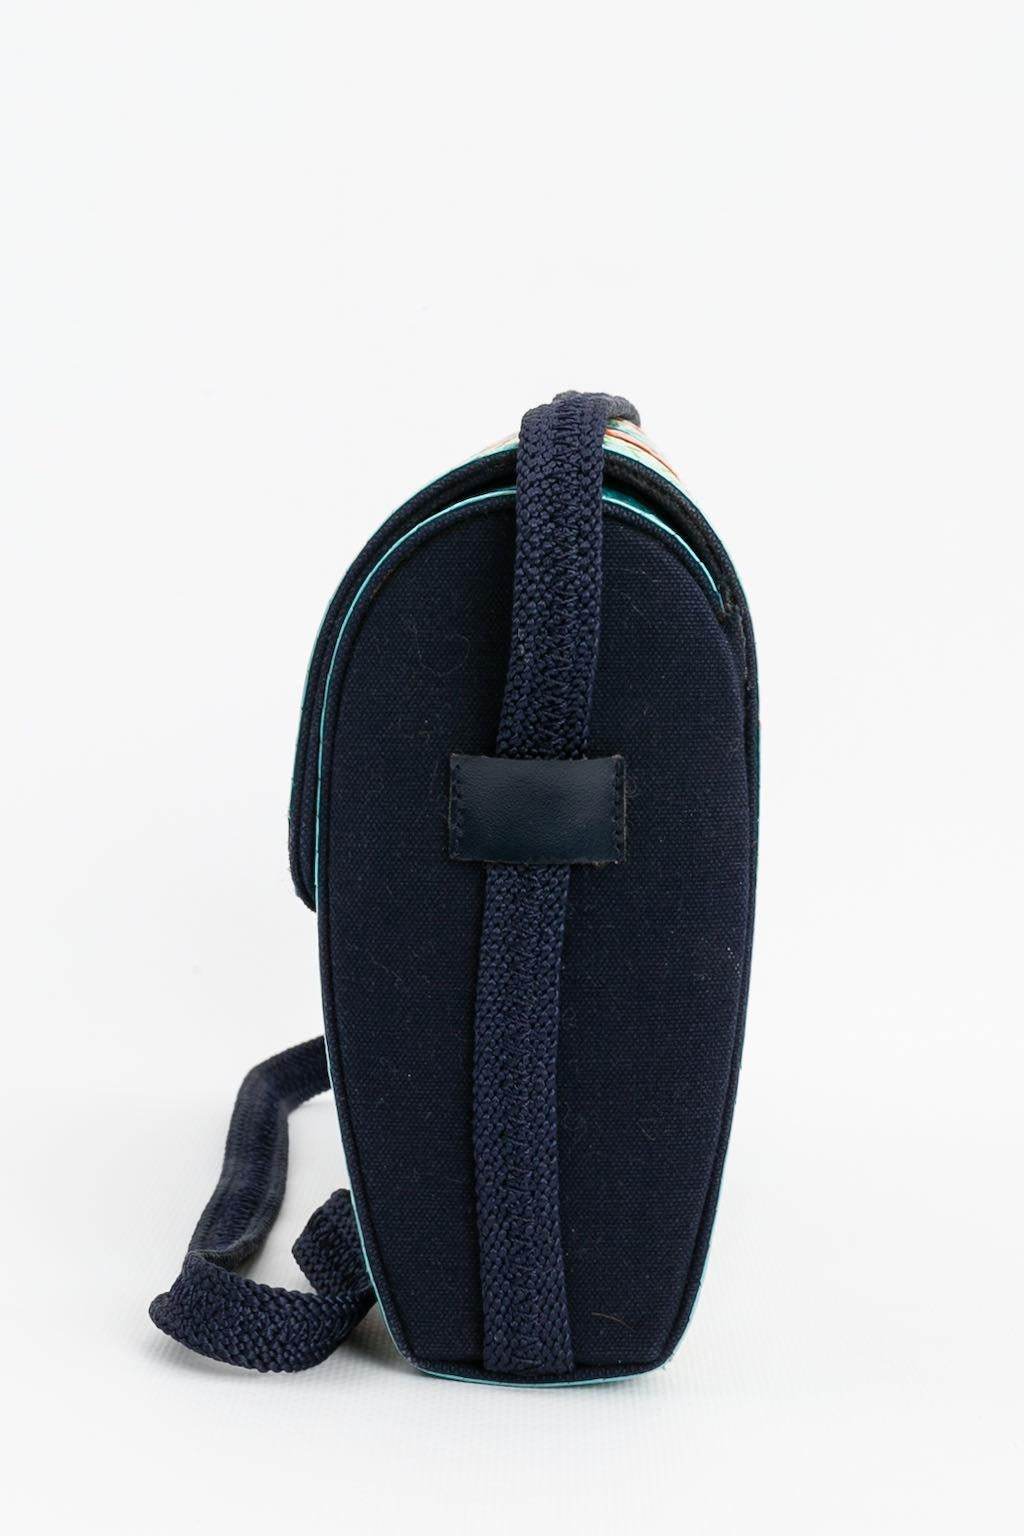 Black Yves Saint Laurent Multi-Color Raffia and Blue Canvas Bag For Sale